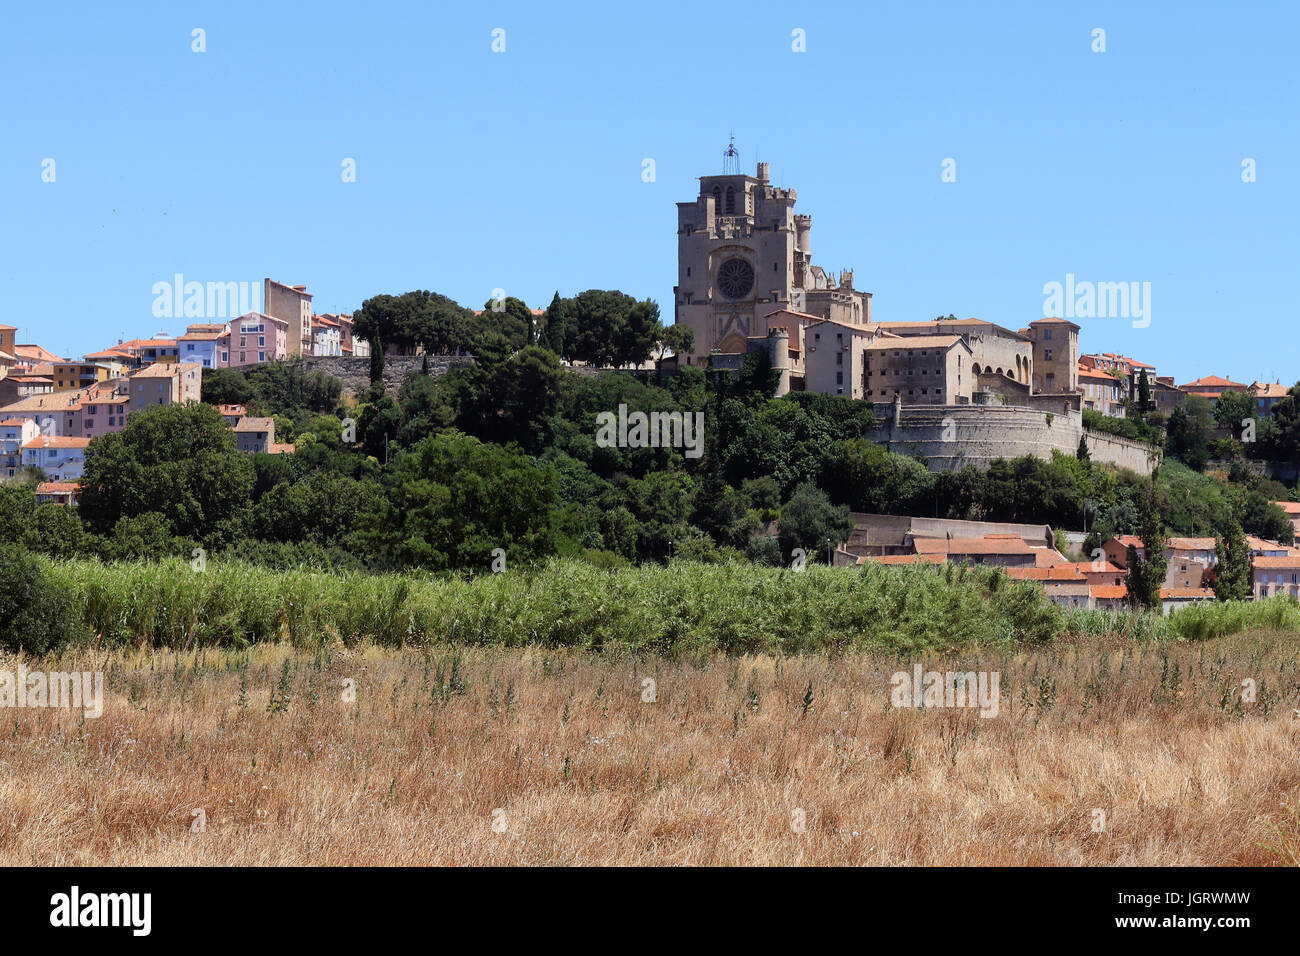 Vue panoramique de la rivière Orb et cathédrale St Nazaire en Bezier, Languedoc-Roussillon, France. Banque D'Images